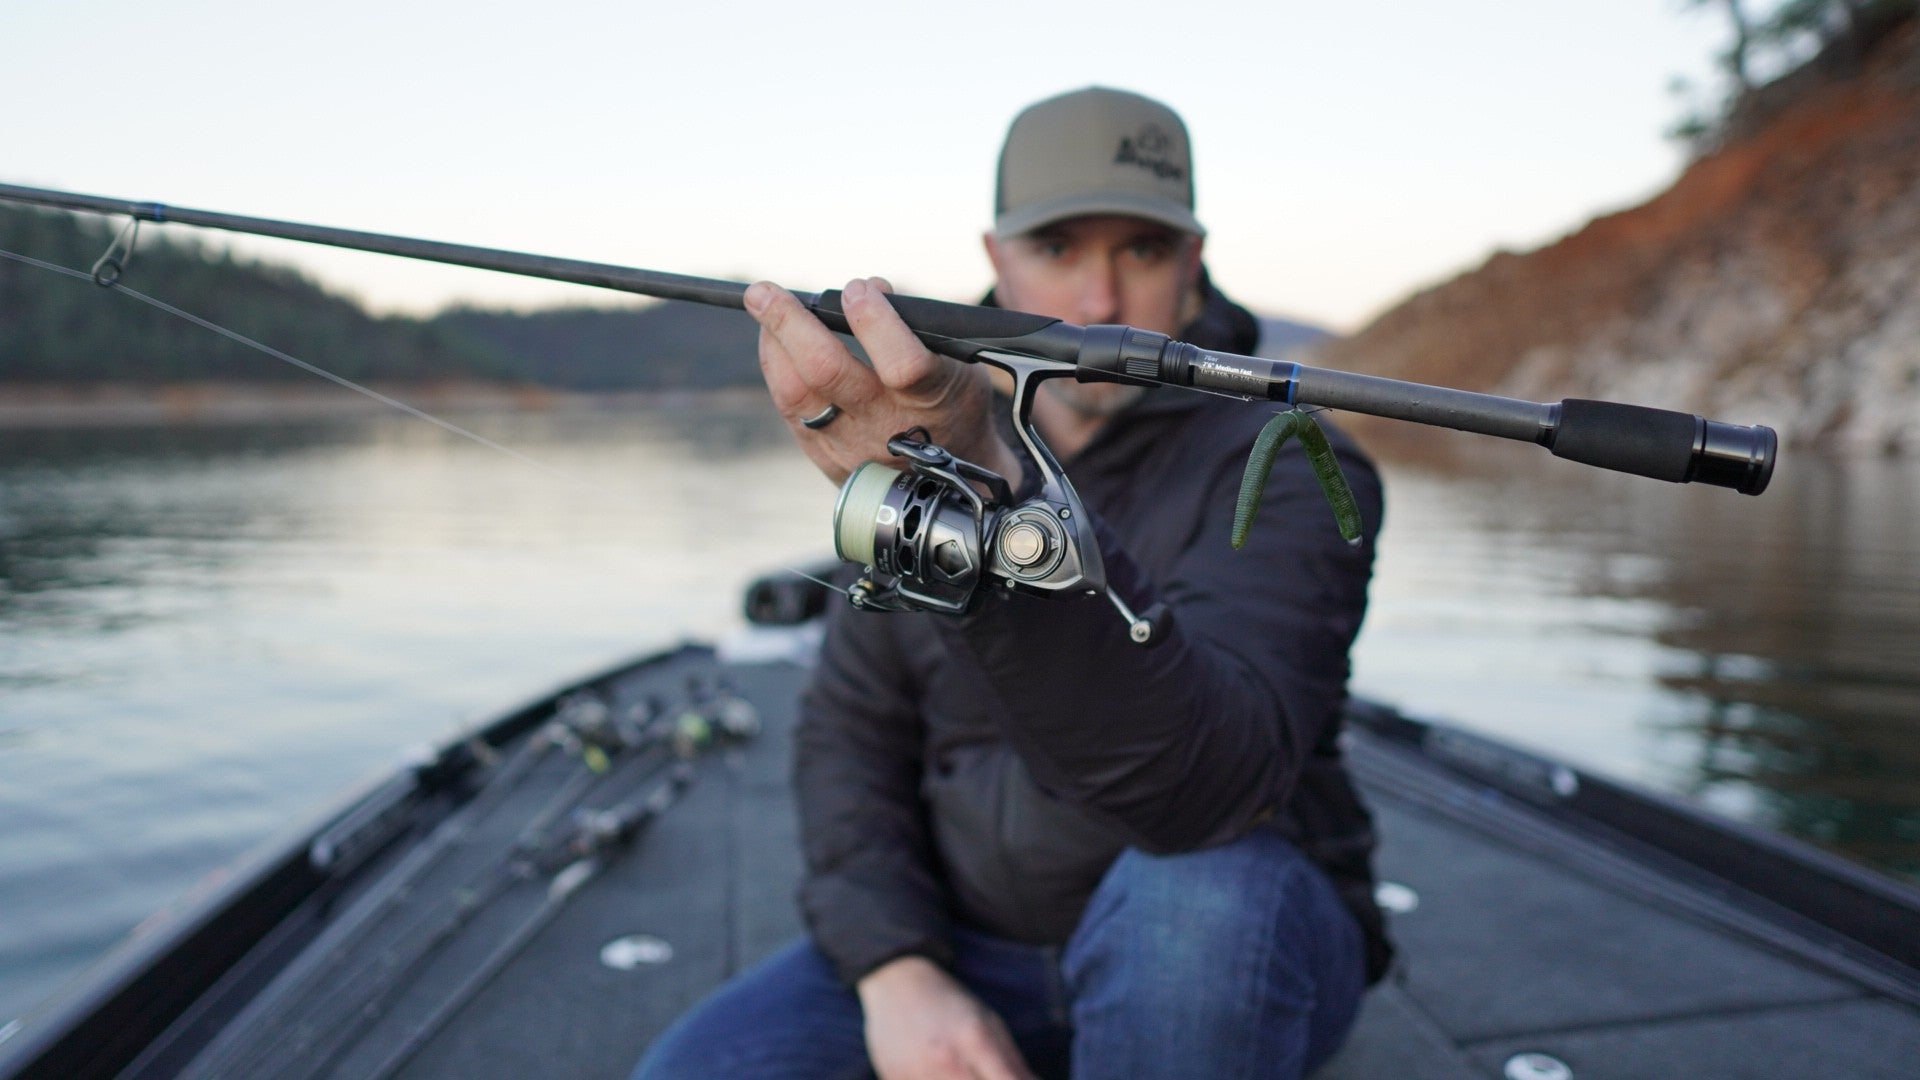 Custom Jig Rod for Bass Fishing - Hitter 7'6 HF – Alpha Angler